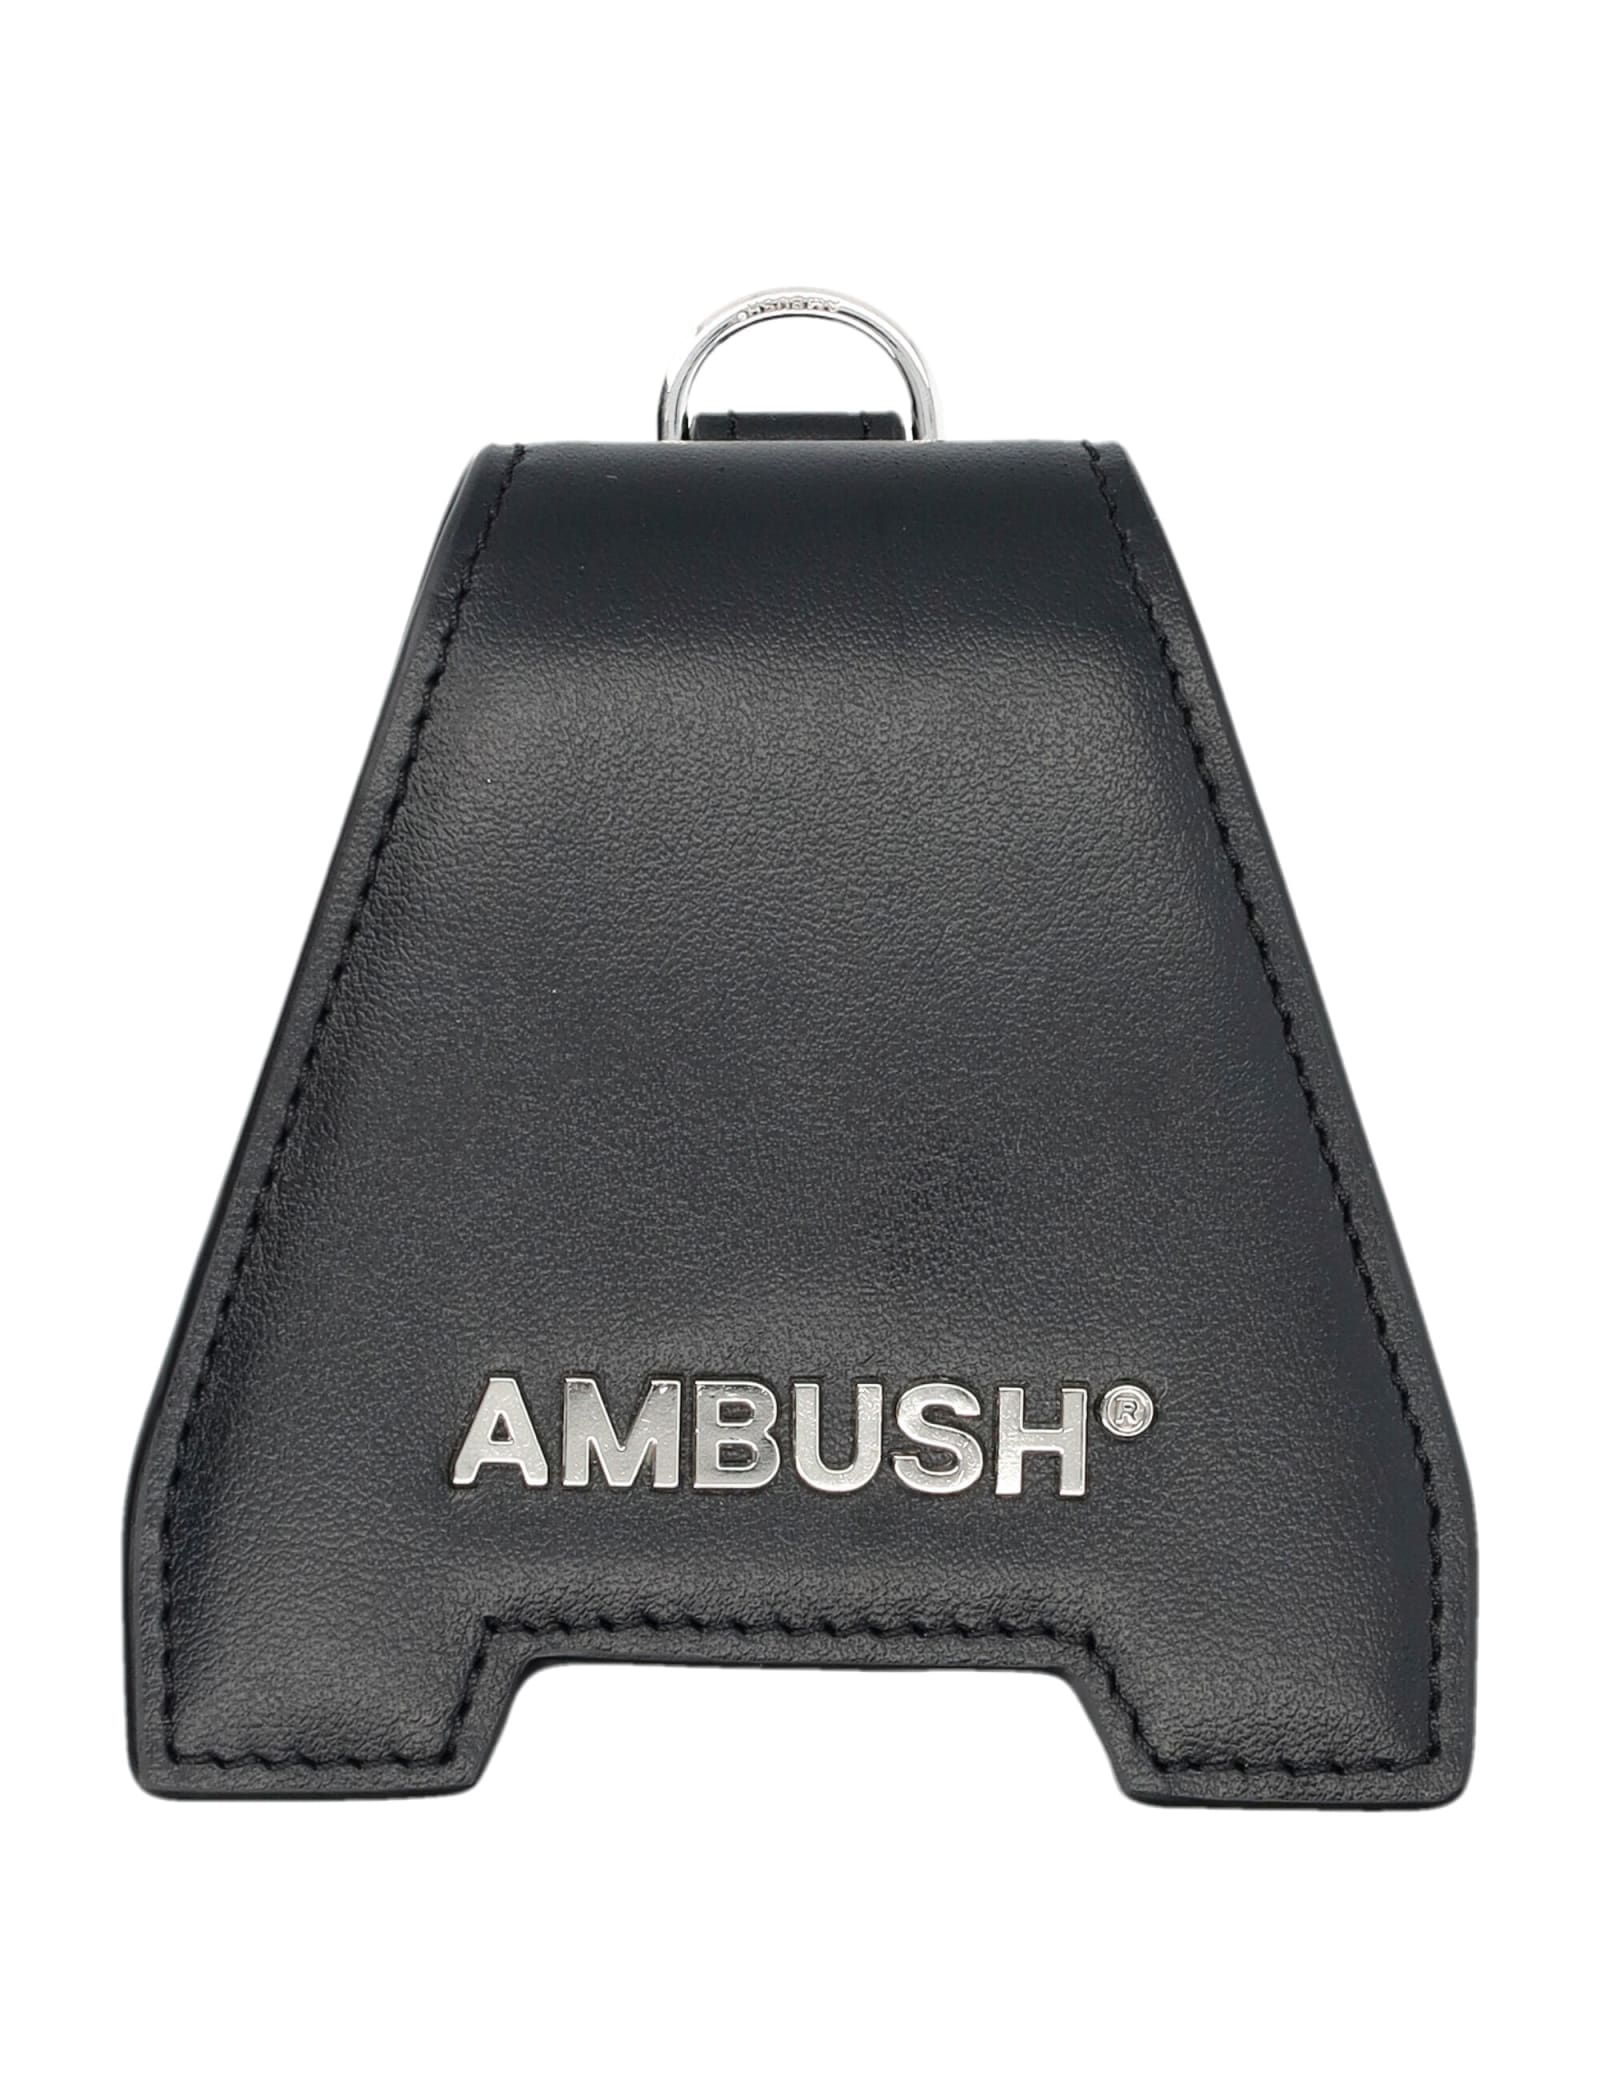 Ambush A Flap Airpods Case In Black